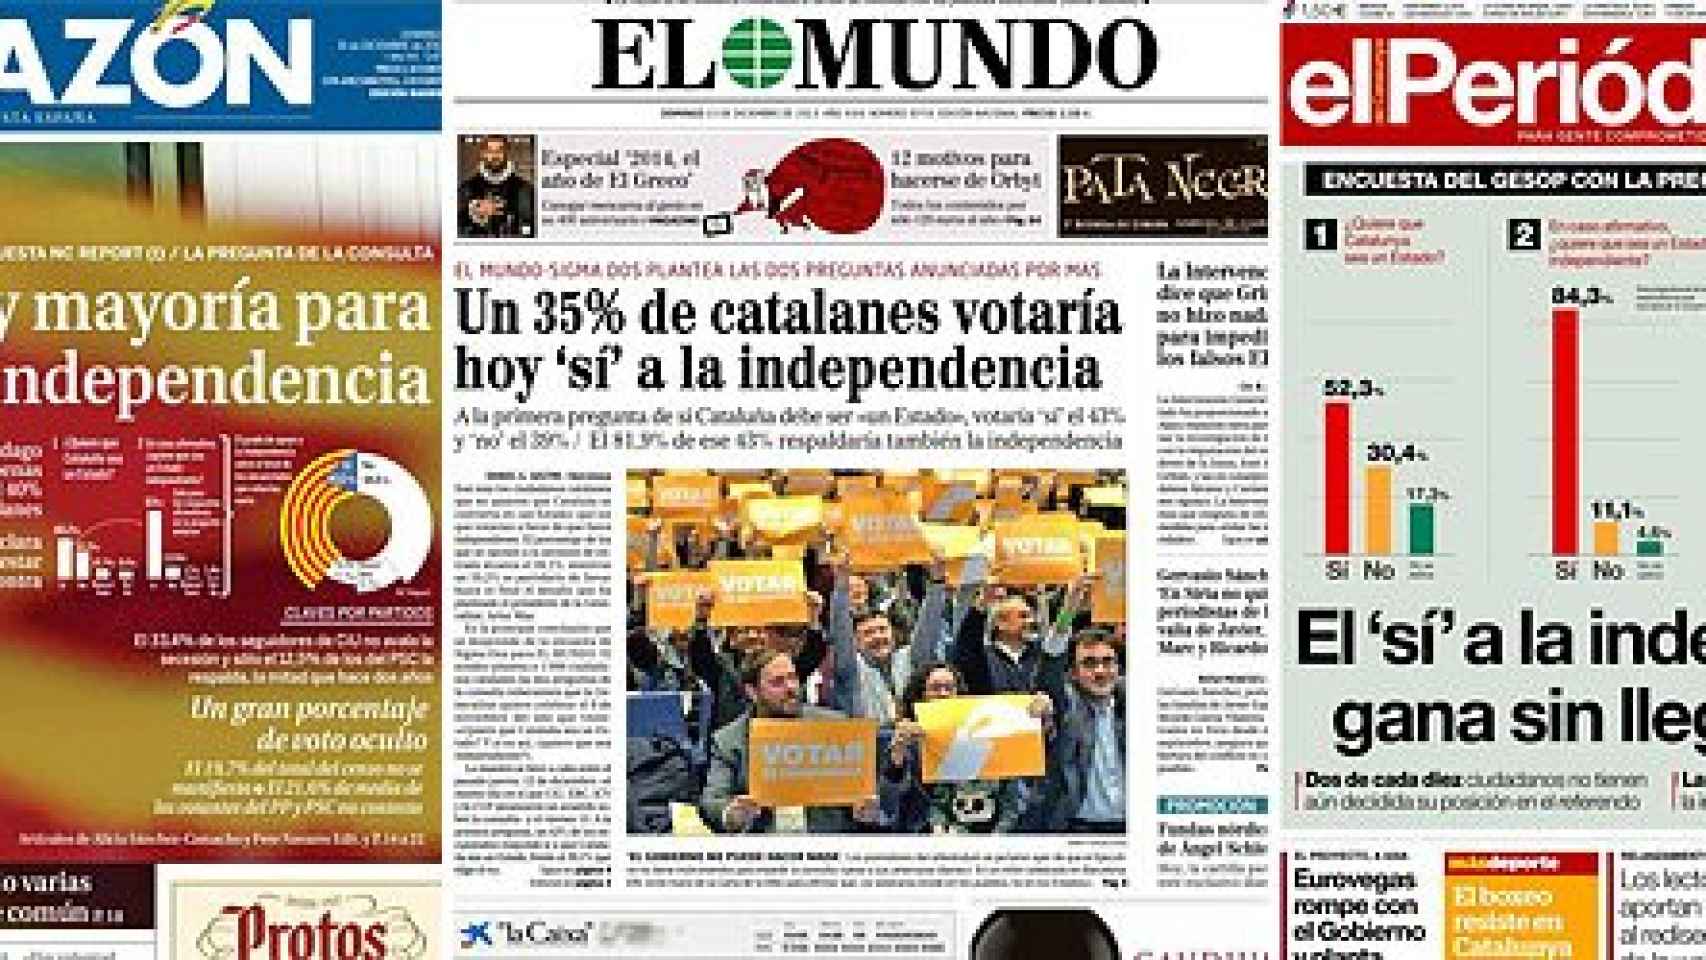 Portadas de 'La Razón, 'El Mundo' y 'El Periódico' con encuestas sobre la secesión de Cataluña según la fórmula planteada por Mas